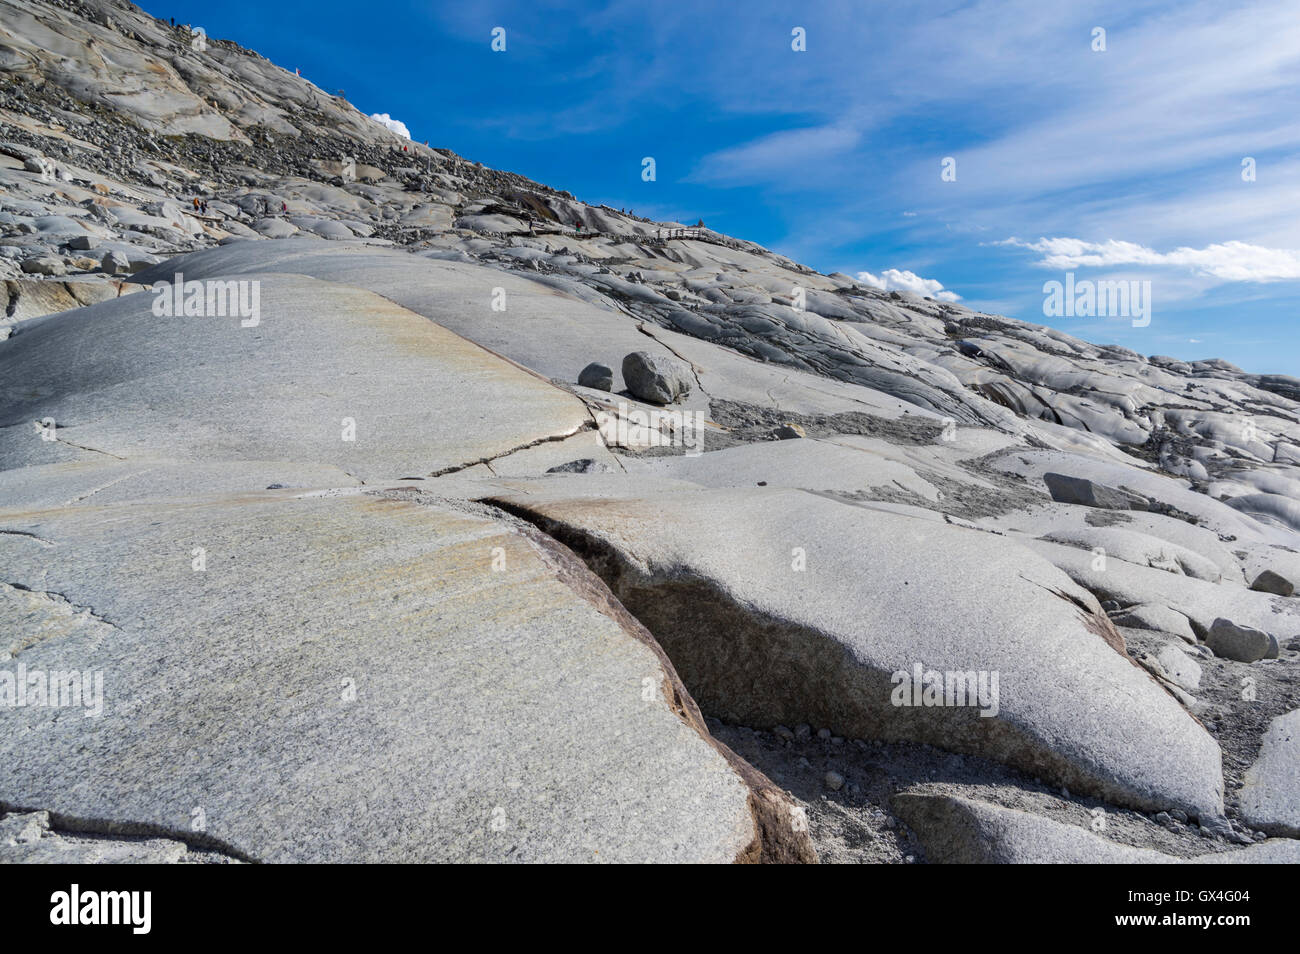 Estrías glaciales debido a la abrasión en la roca cerca del Ródano glaciar de los Alpes Suizos. Foto de stock